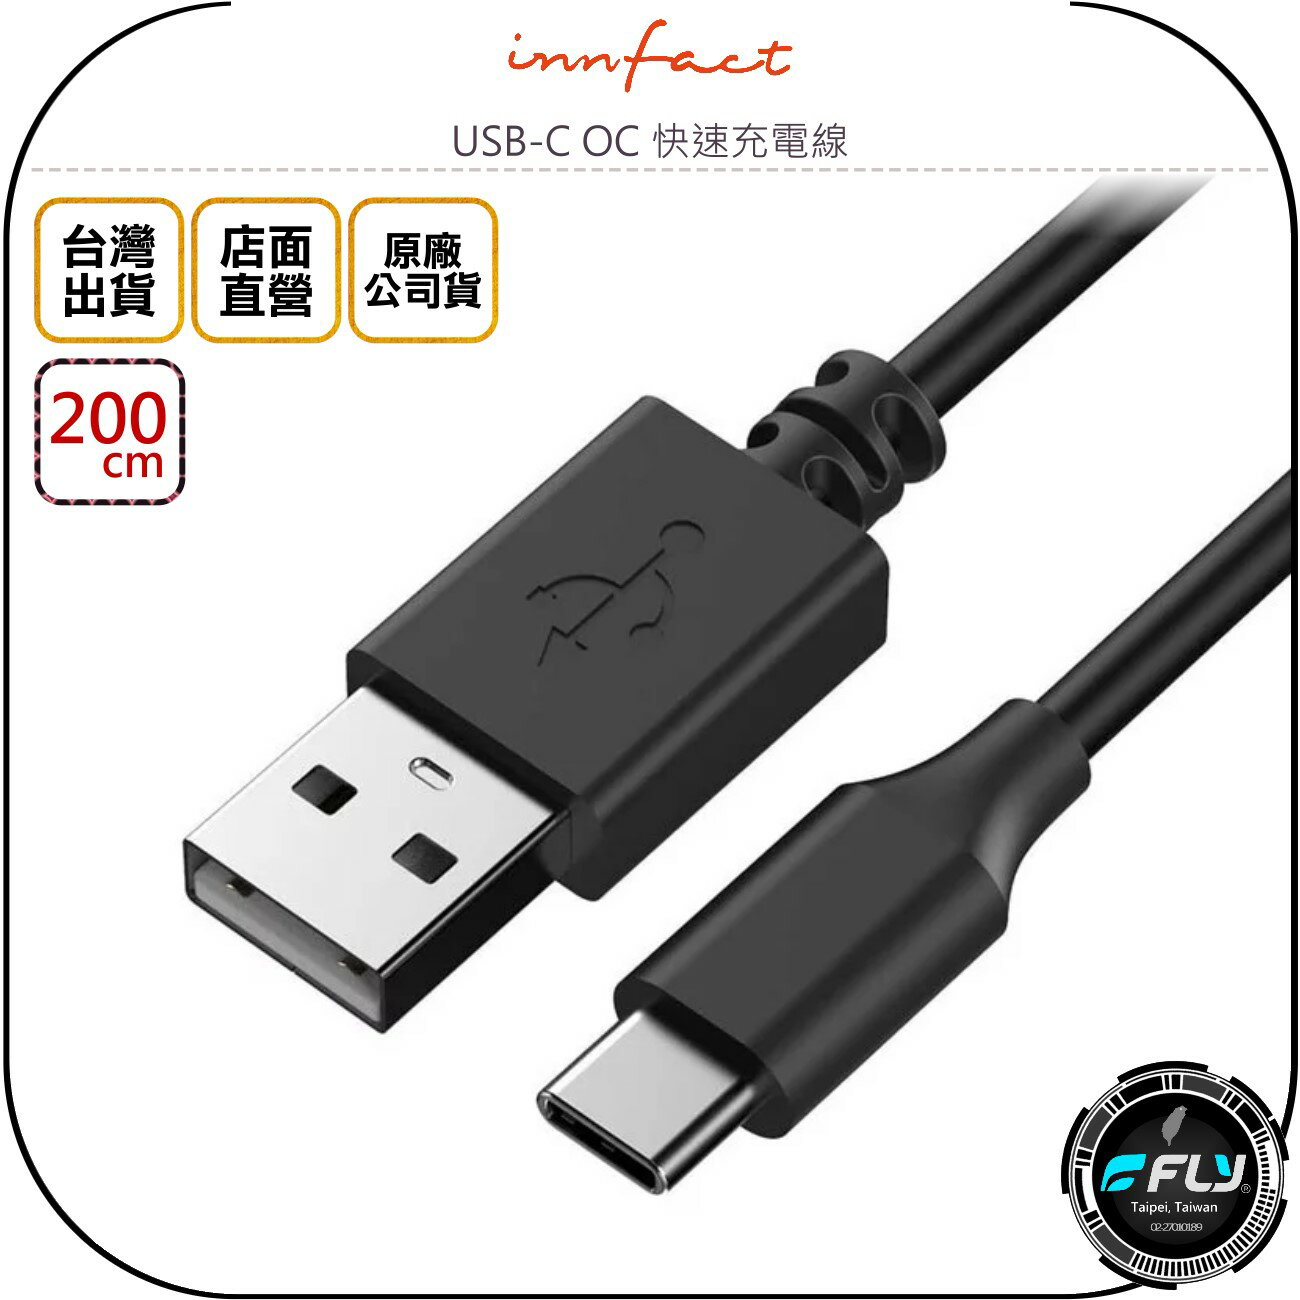 《飛翔無線3C》Innfact USB-C OC 快速充電線 200cm◉公司貨◉TYPE-C 安卓充電◉USB傳輸